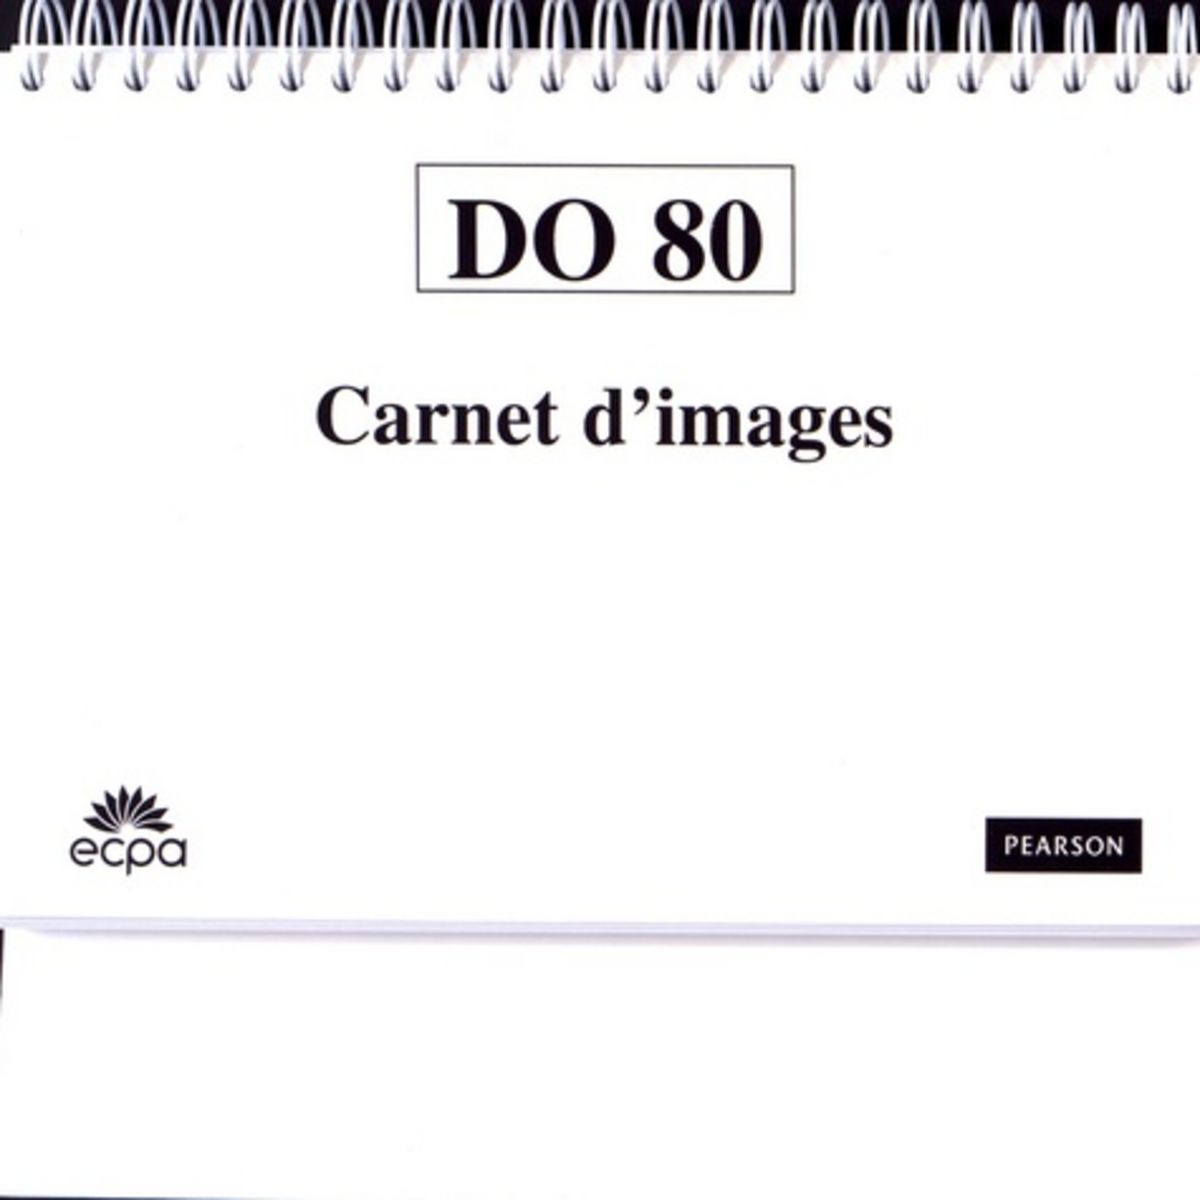 DO 80 TEST DE DENOMINATION ORALE D'IMAGES. MATERIEL COMPLET AVEC